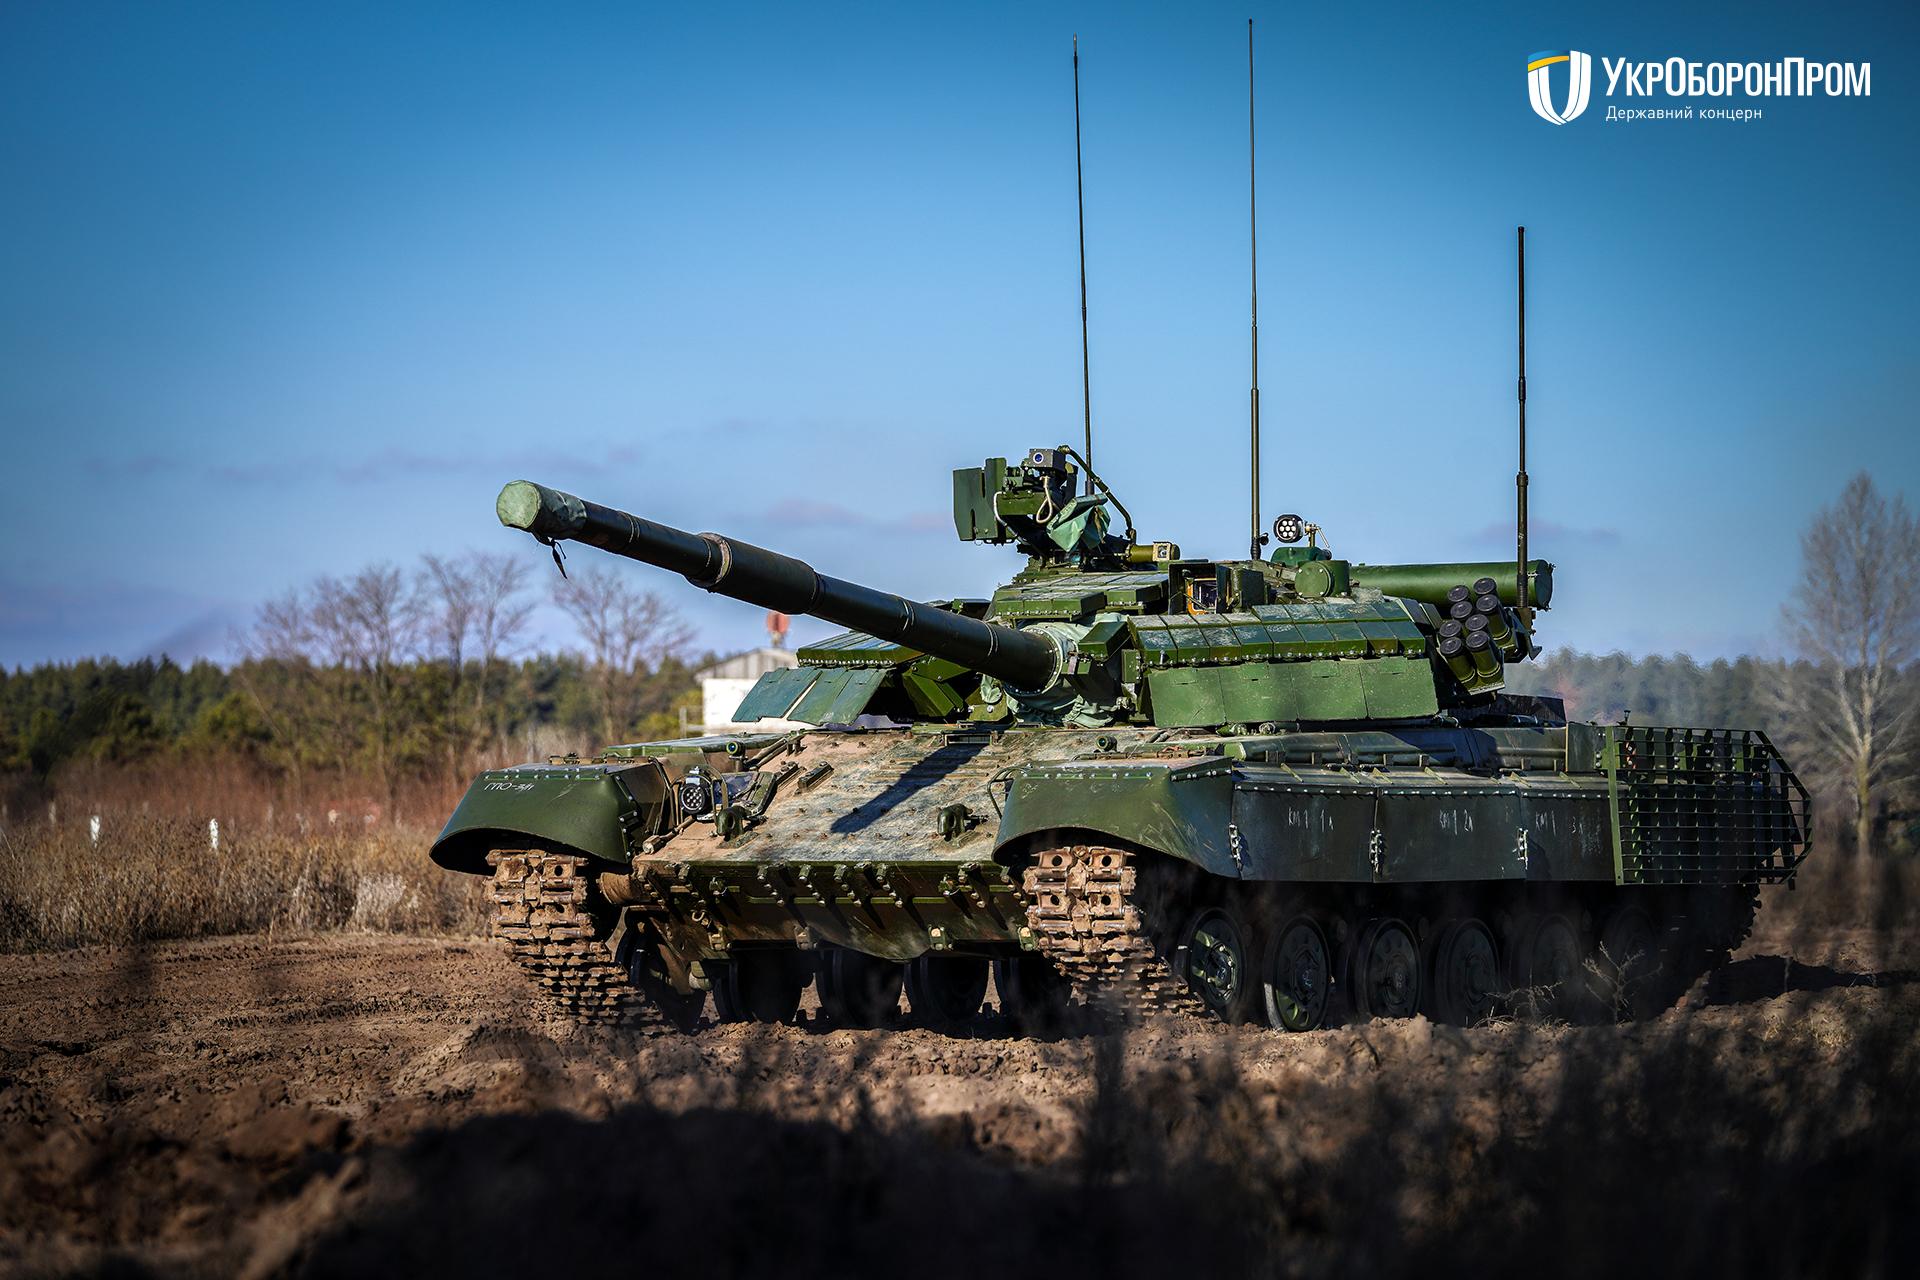 Ukraine's Kharkiv Armored Plant Modernises T-64BVK Command Main Battle Tank